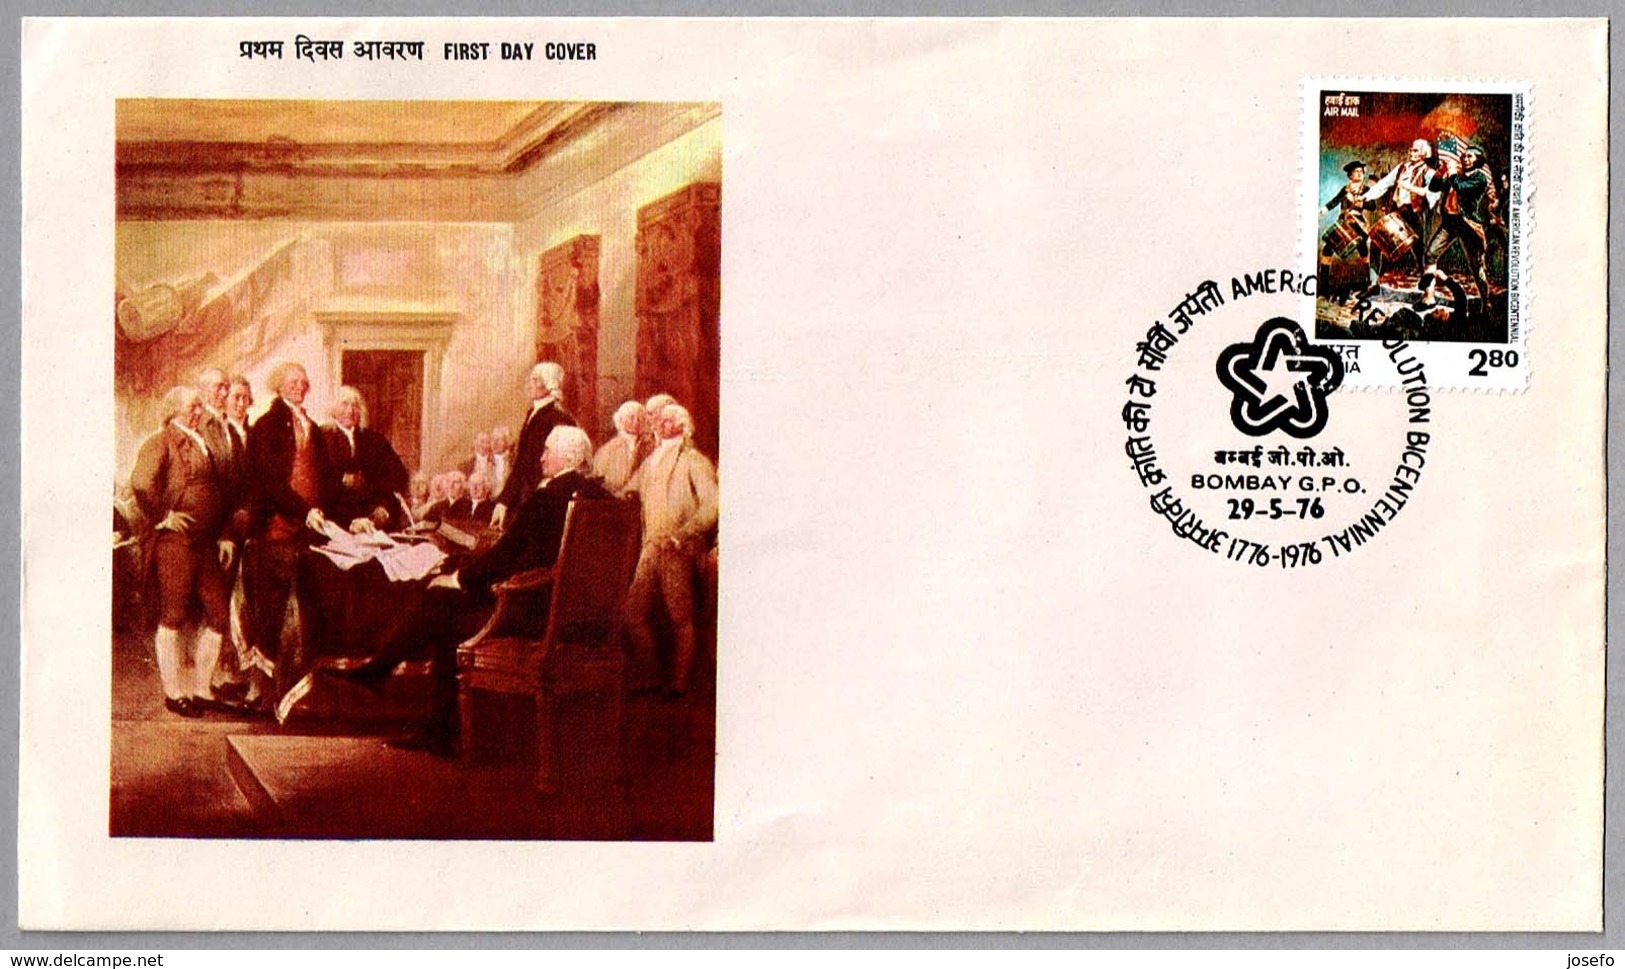 BICENTENARIO DE LA INDEPENDECIA DE ESTADOS UNIDOS - Bicentennial Independence United States. SPD/FDC Bombay 1976 - Independecia USA